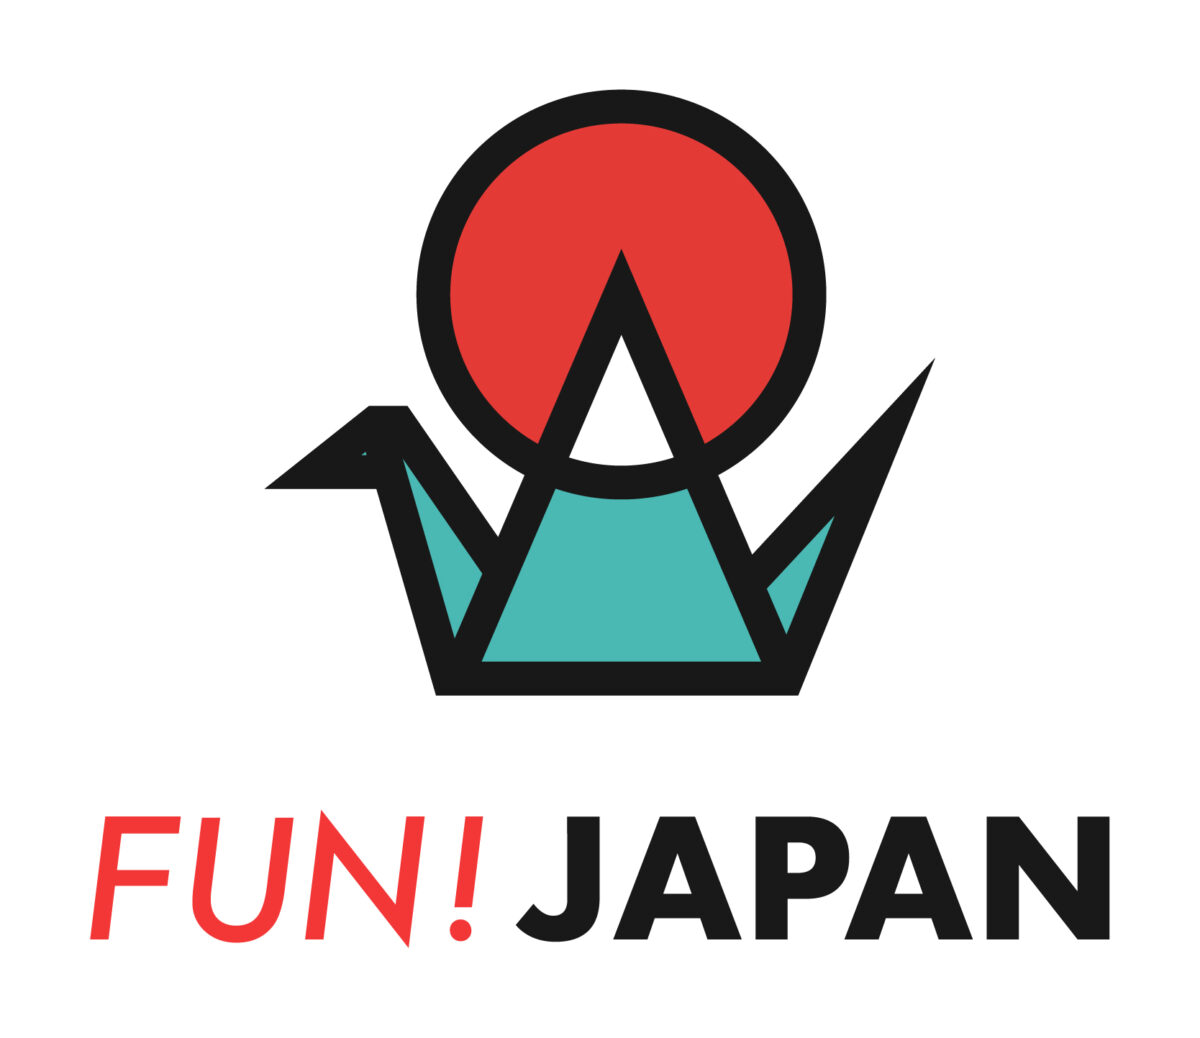 “日本好き”向けメディア「FUN! JAPAN」がサイトデザインとロゴをリニューアル